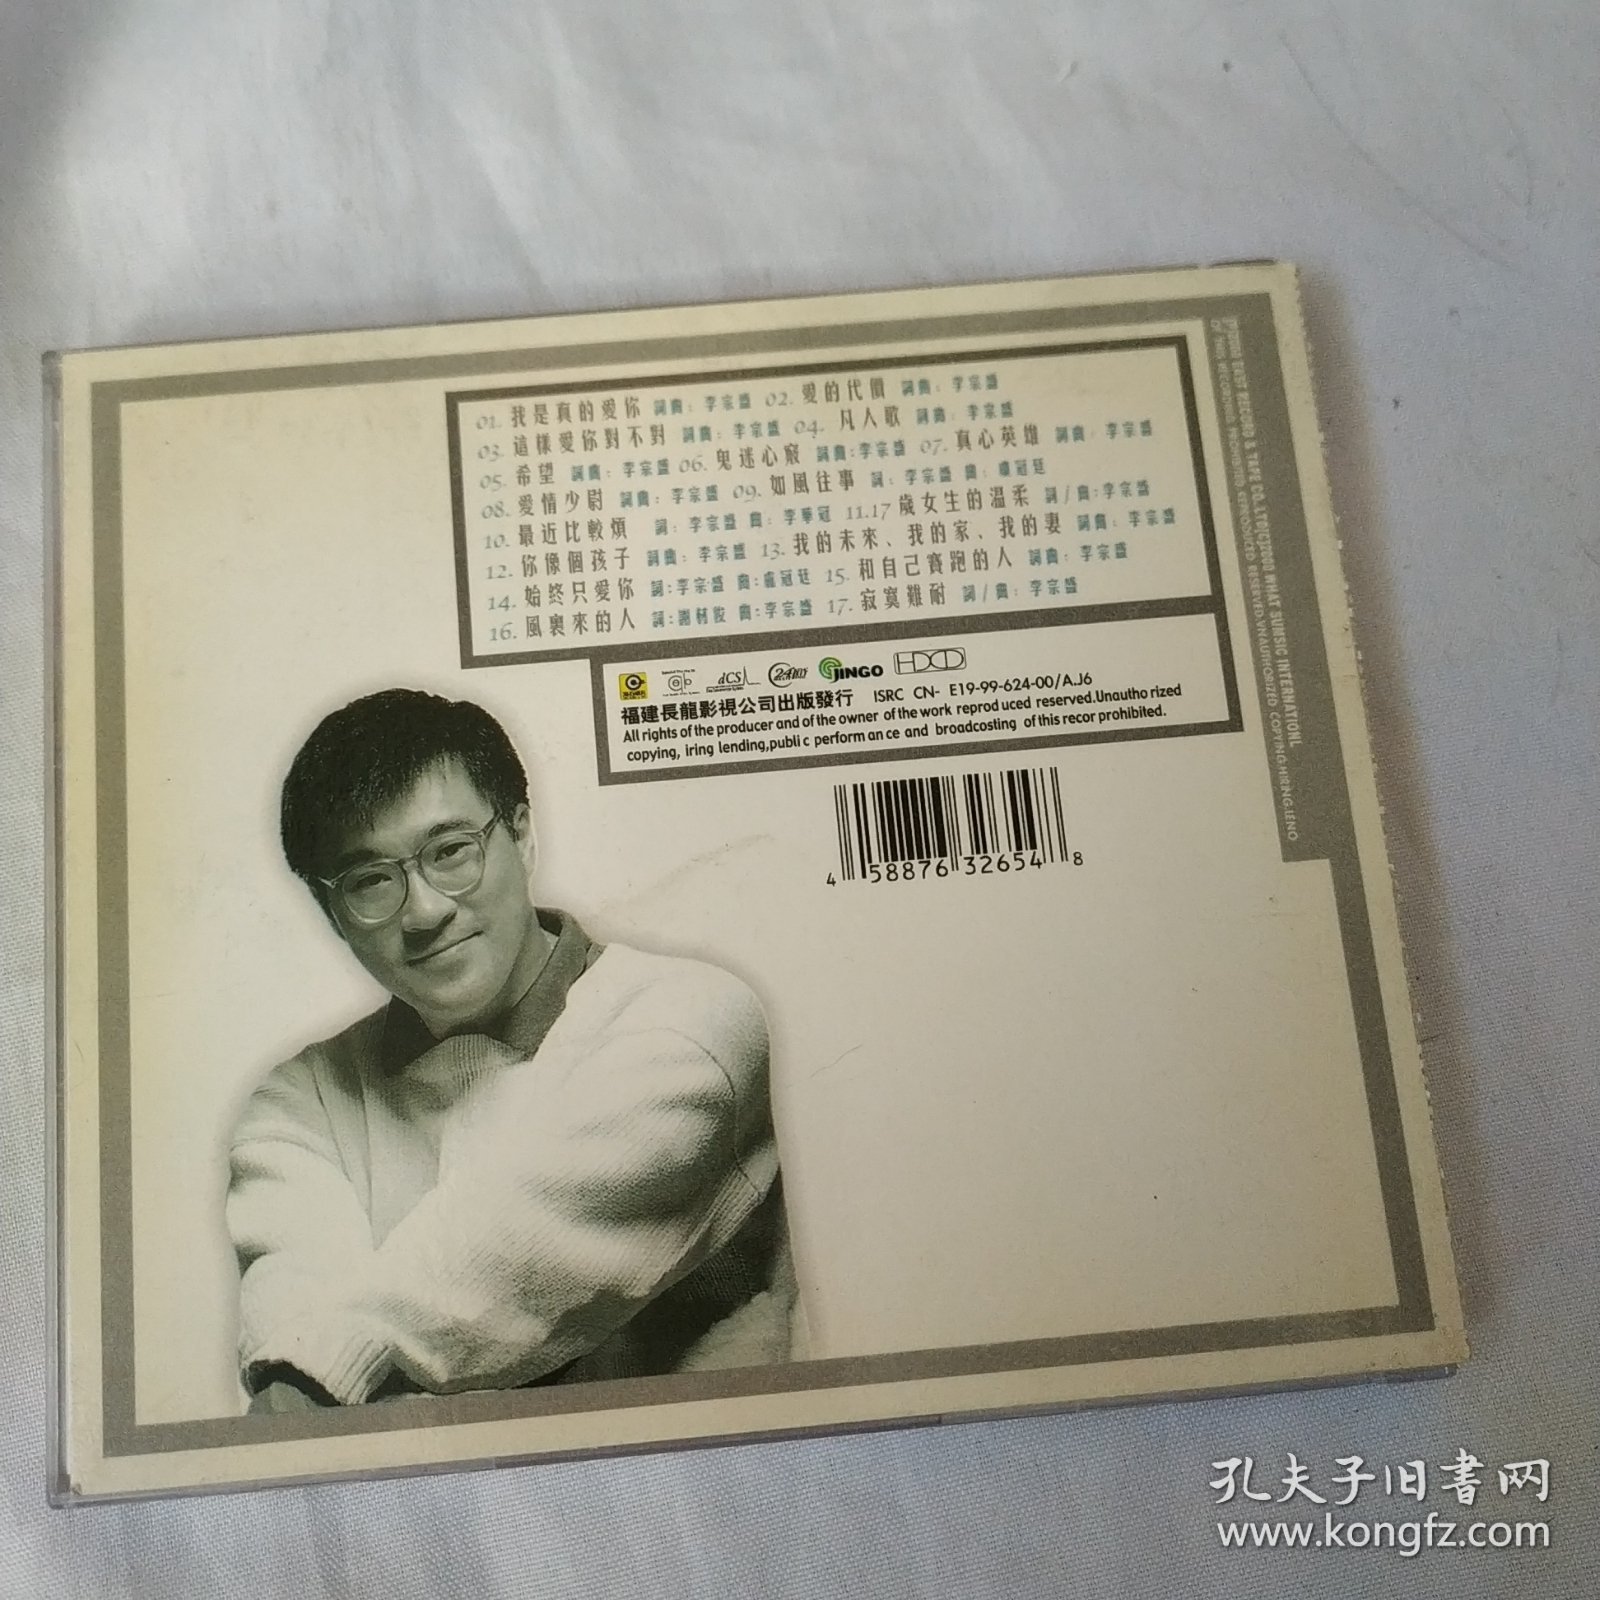 李宗盛 1984-2000世纪情歌作品集 1CD盒装正版